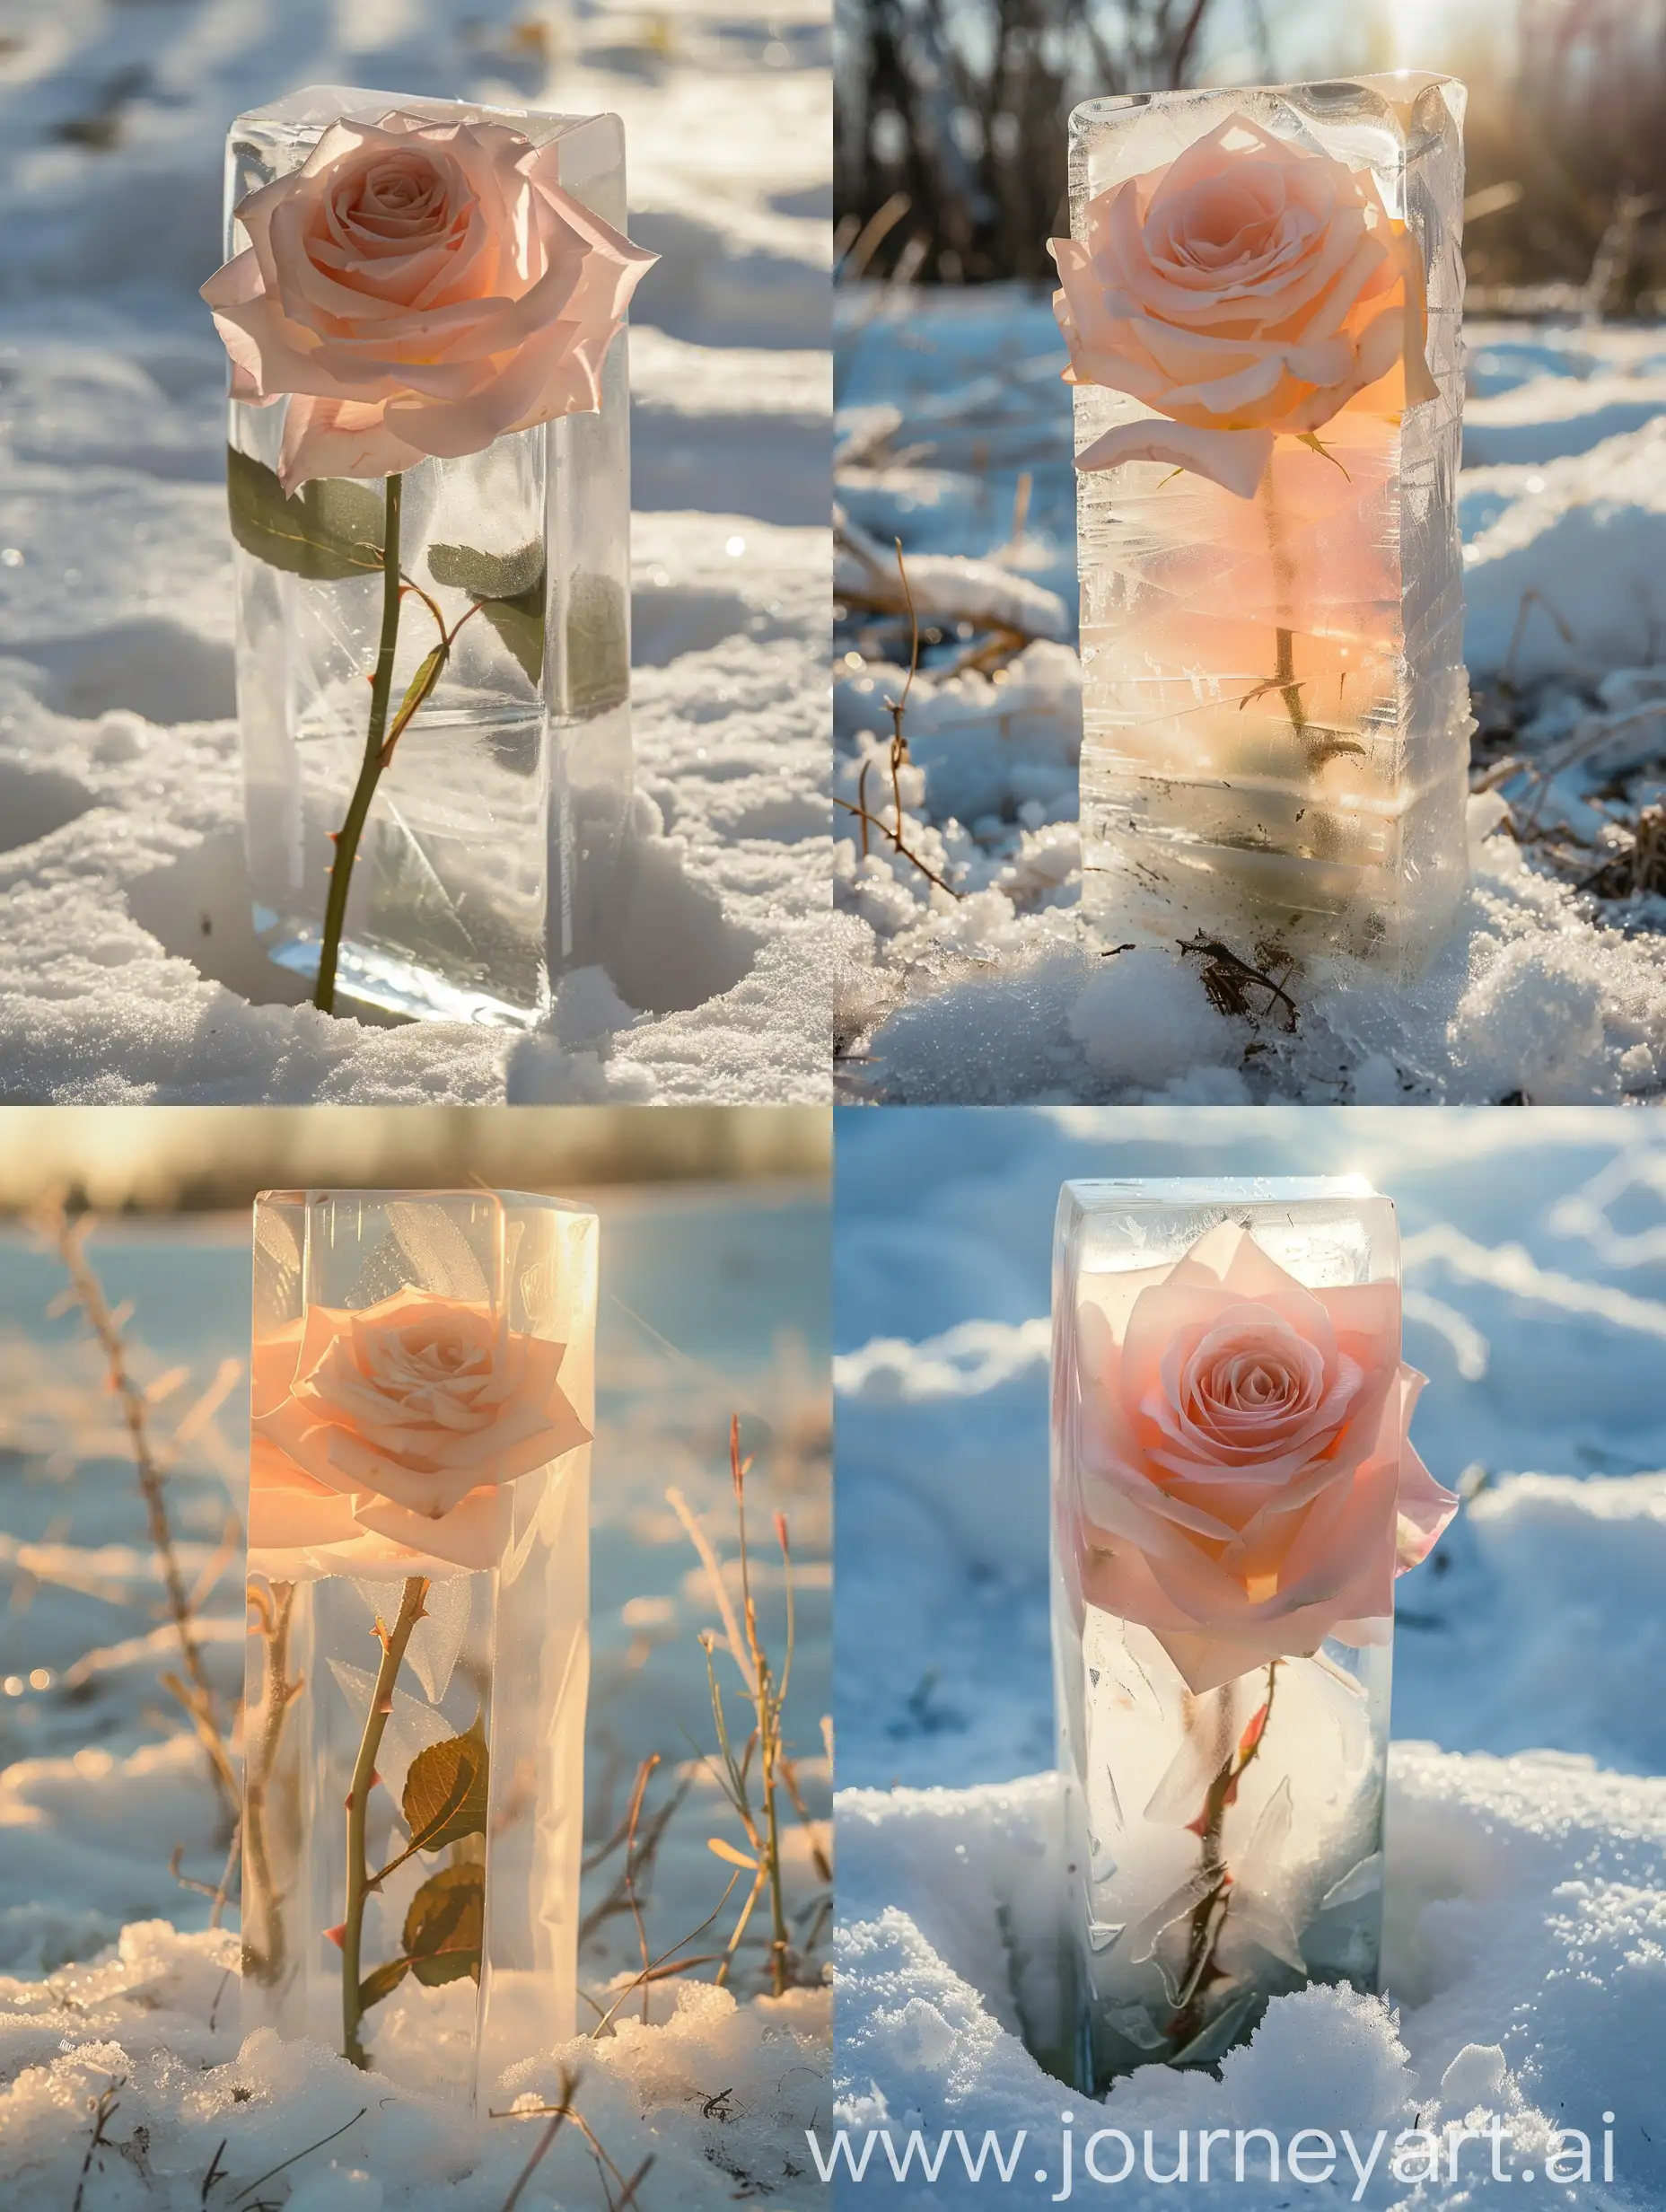 雪地上有一个冰块，冰块里有一朵竖着生长的浅粉色渐变玫瑰，阳光照射在冰块上，光线柔和